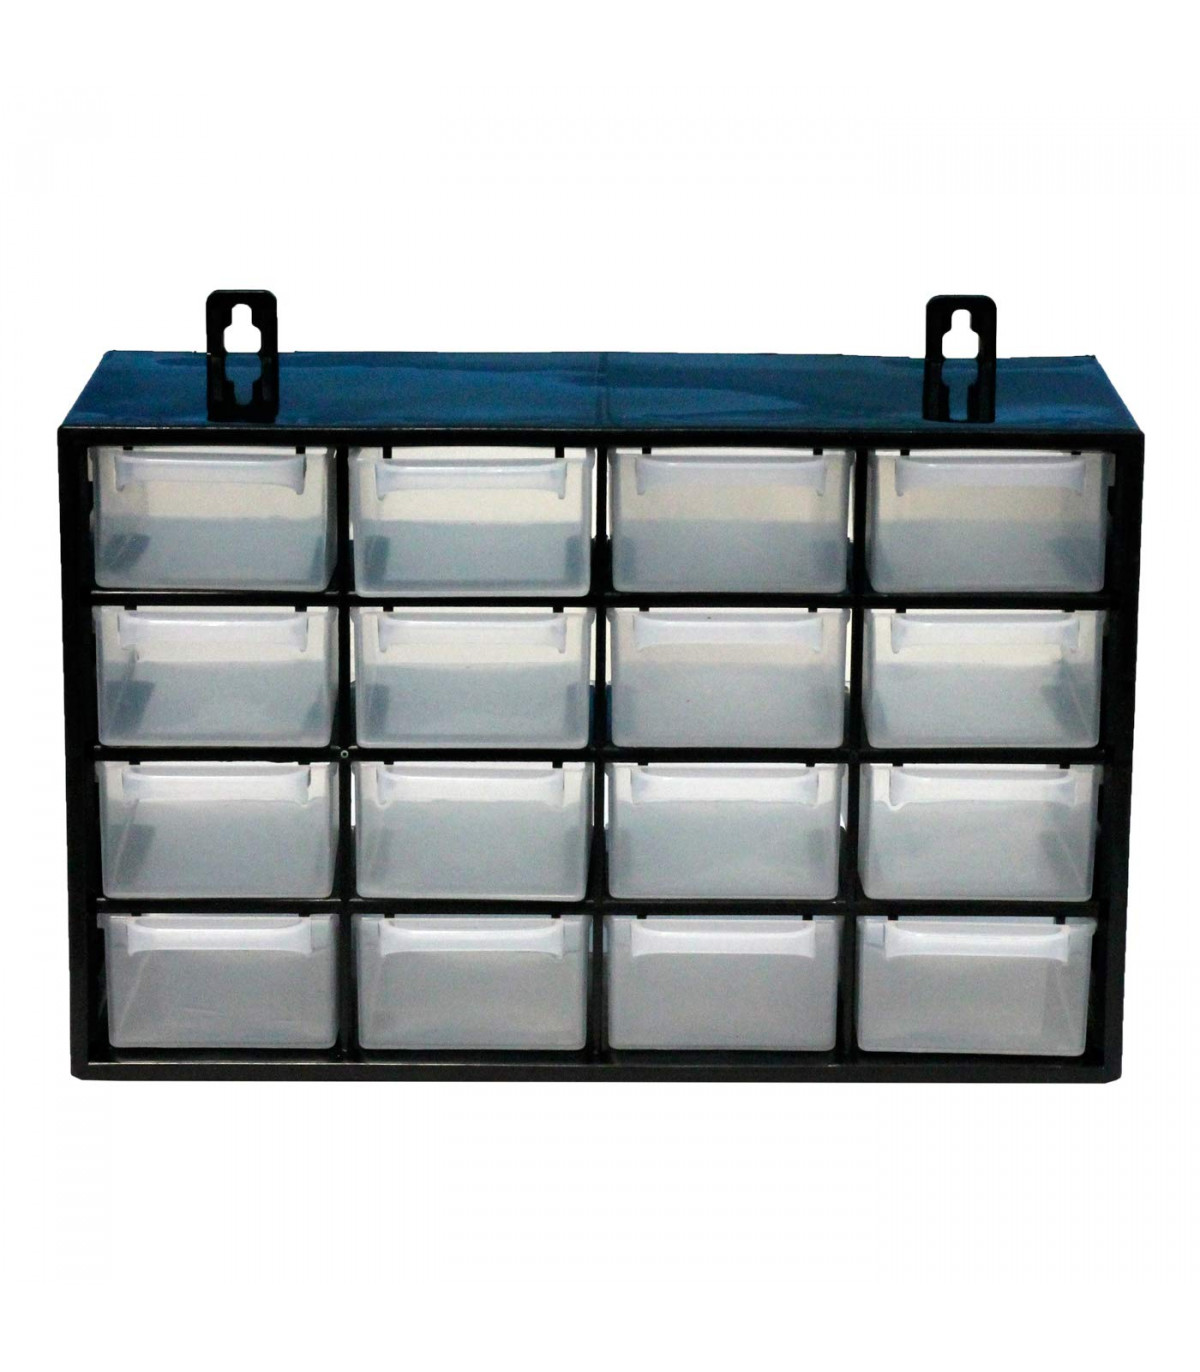 Clasificador apilable con 16 cajones, negro, 17 x 27 x 12 cm. Módulo,  estante organizador de plástico para piezas pequeñas, tall